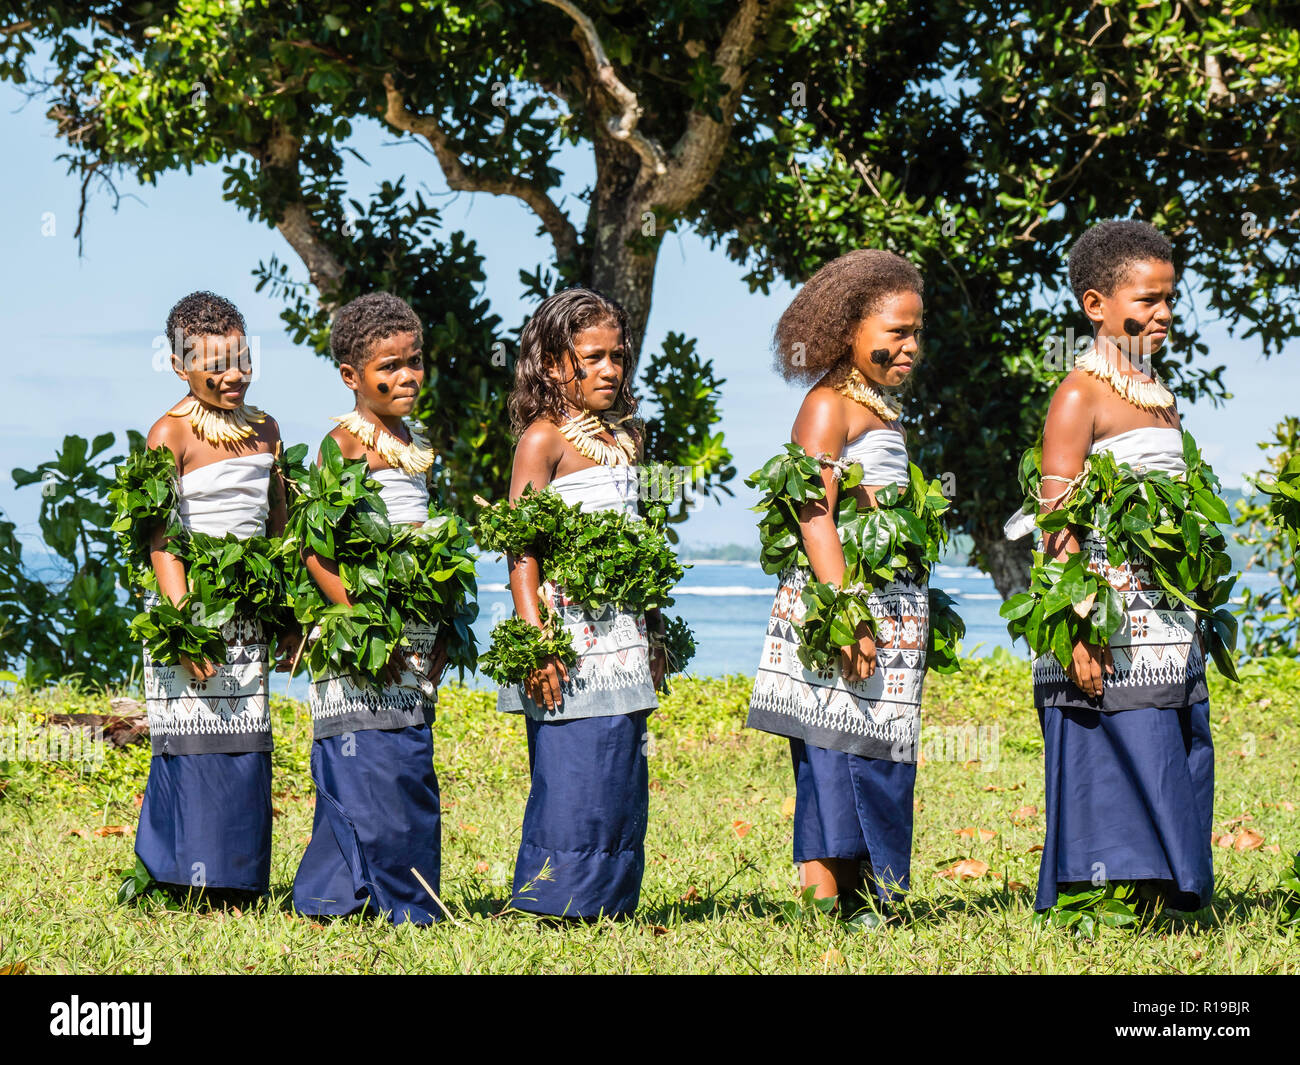 Les enfants du canton de Waitabu effectuer la danse traditionnelle sur l'île de Taveuni, République de Fidji. Banque D'Images